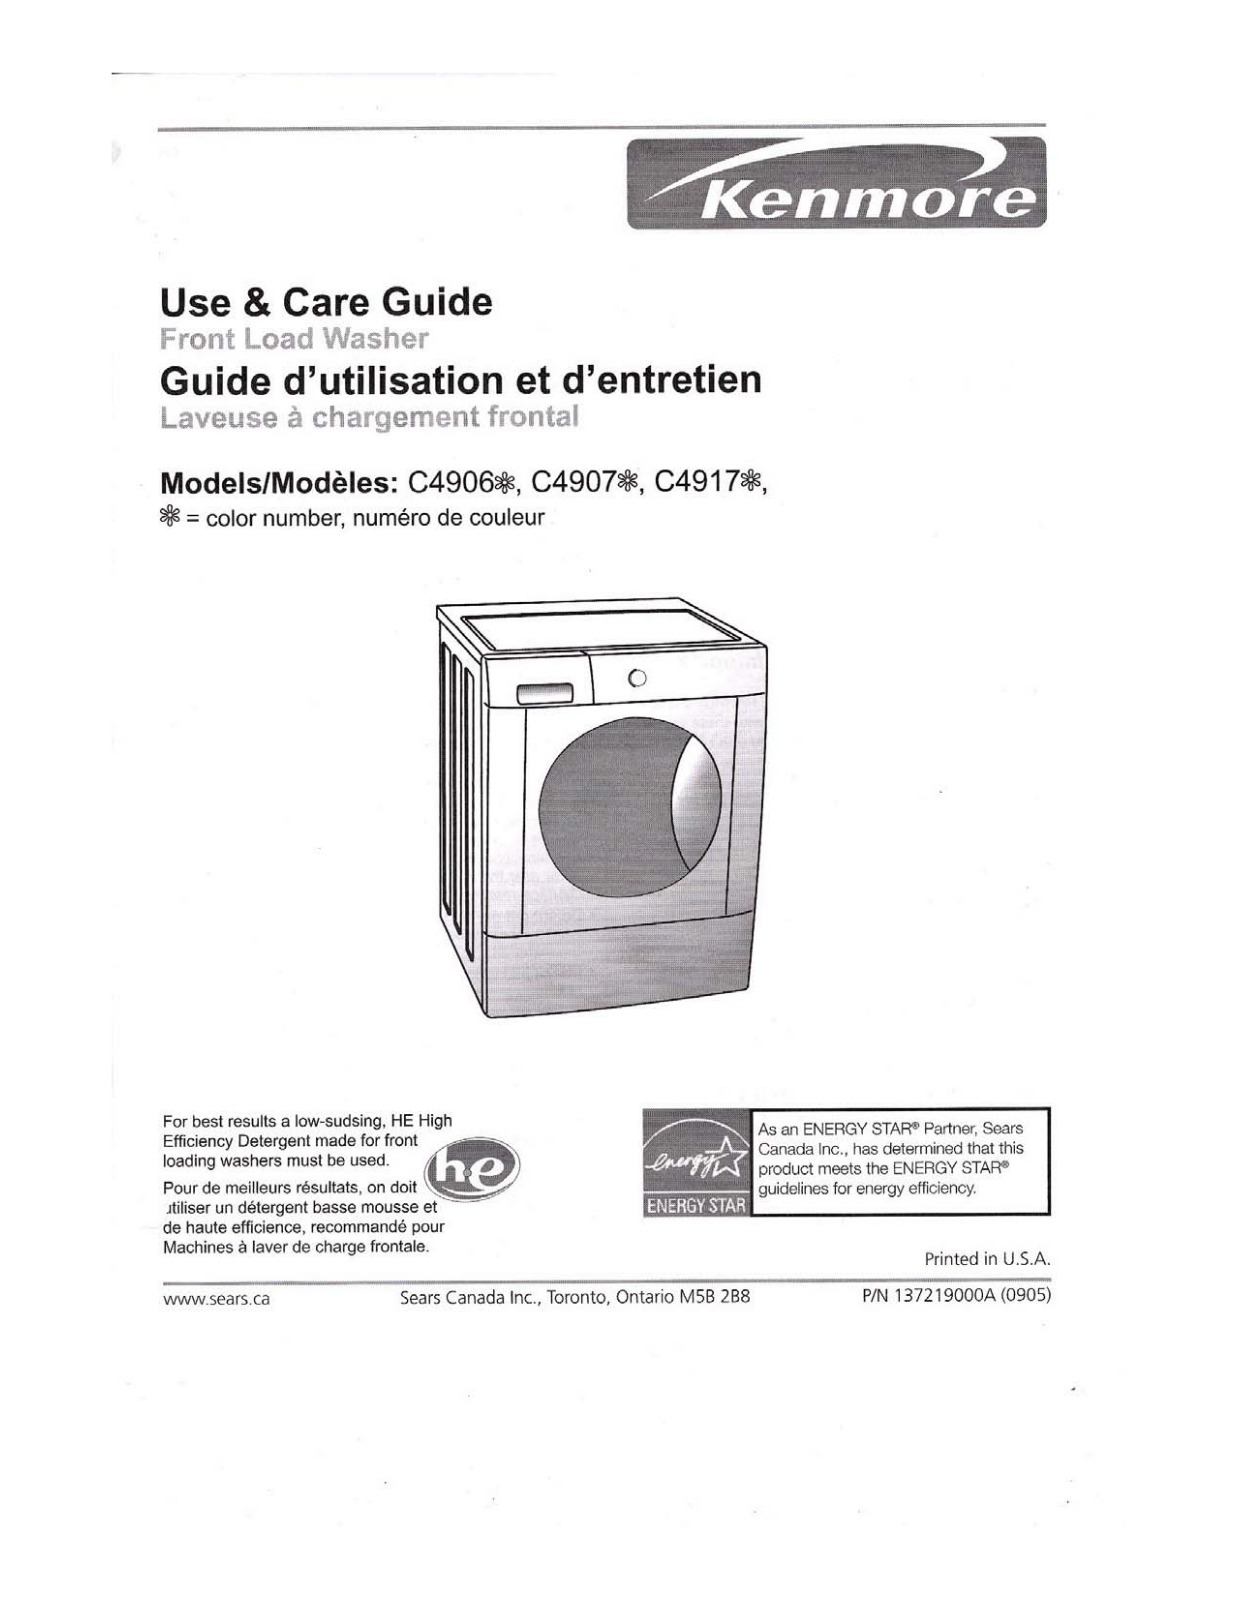 Kenmore C4907, C4906, C4917 Manual